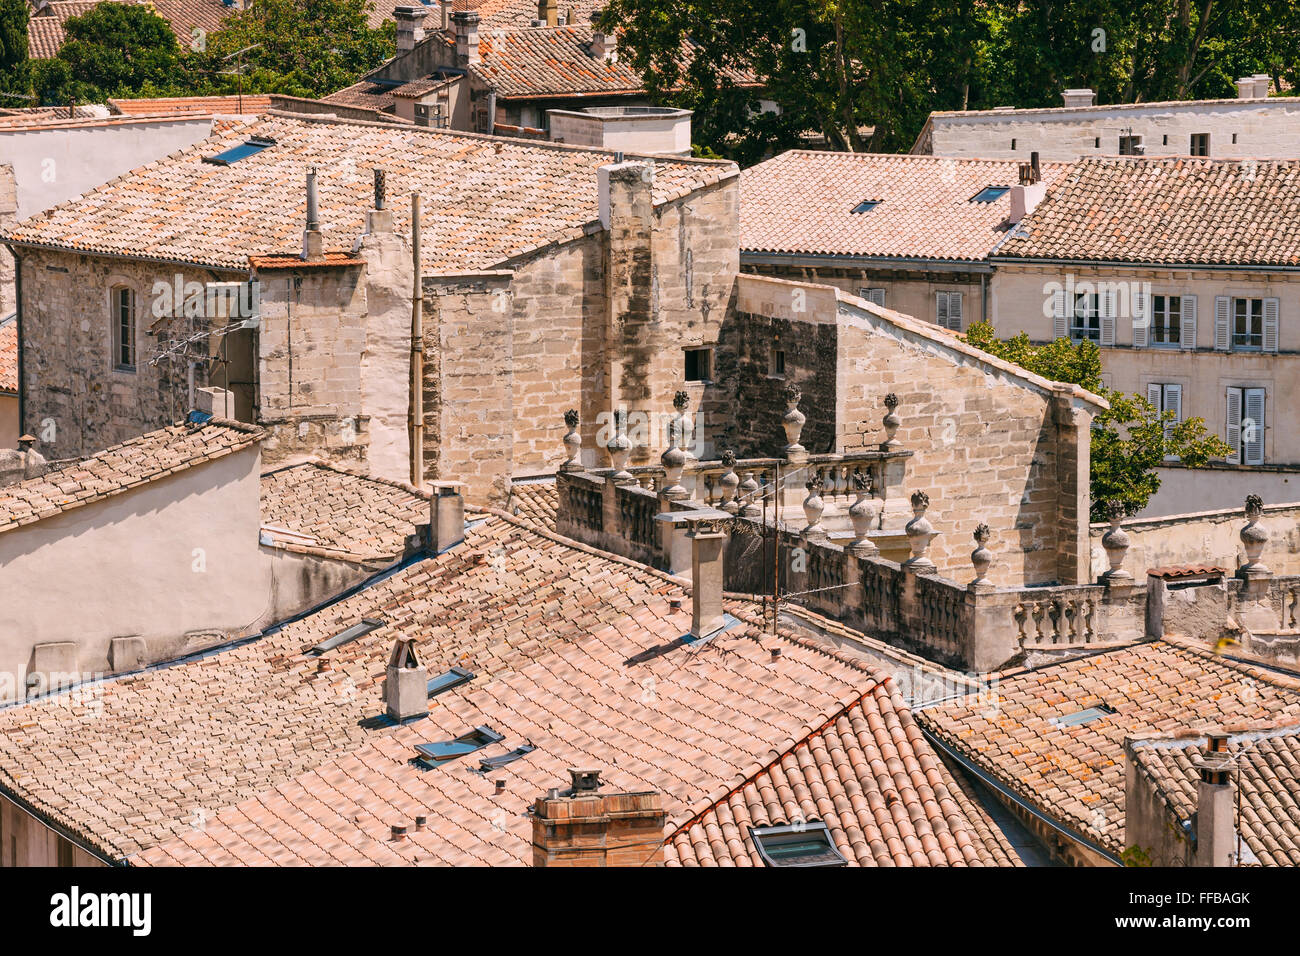 Toits de maisons anciennes à Avignon, Provence, France Banque D'Images